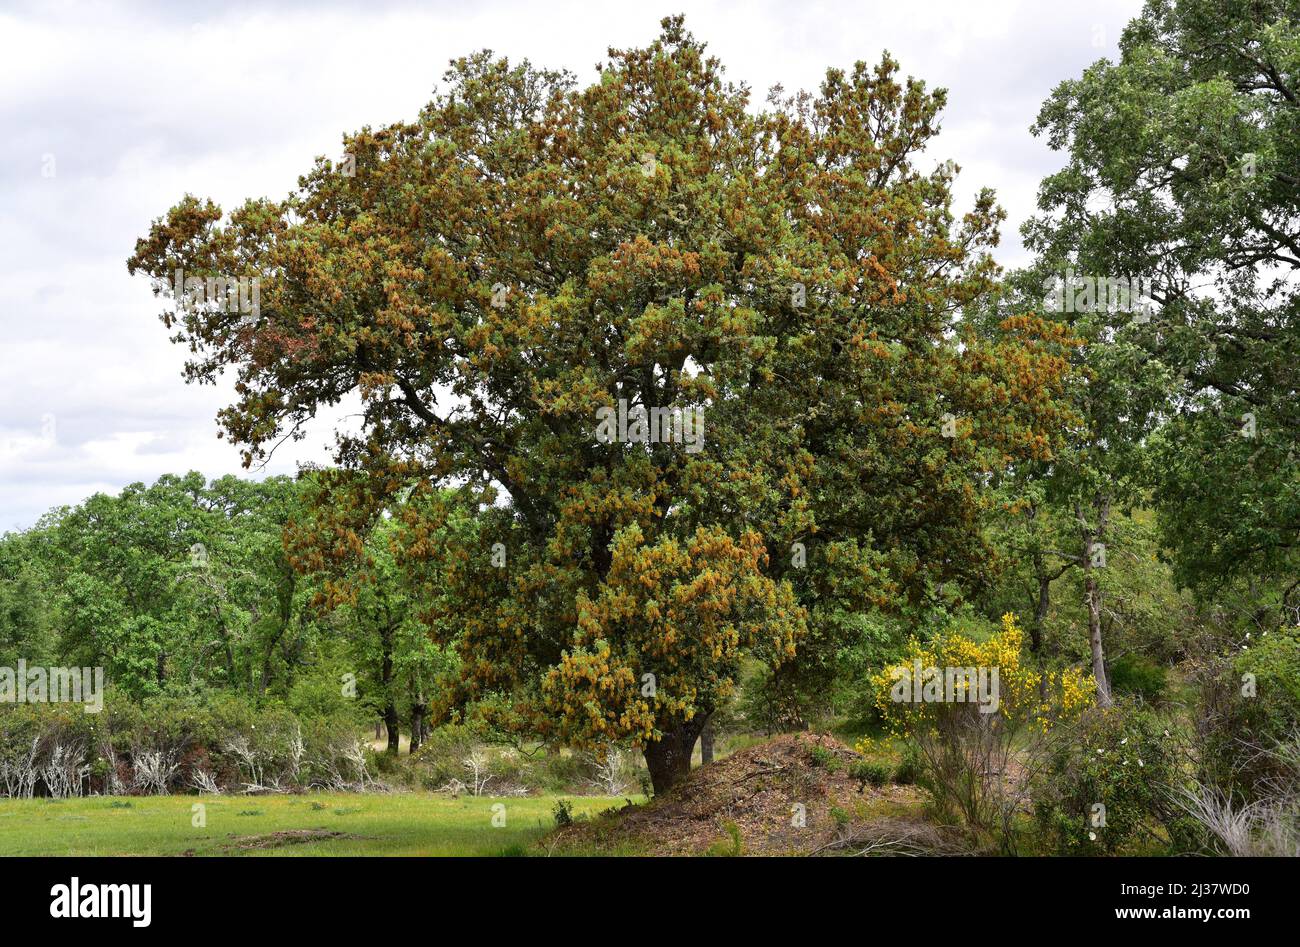 El roble de hoja perenne (Quercus ilex ballota o Quercus ilex rotundifolia) es un árbol de hoja perenne nativo de la cuenca mediterránea (Península Ibérica y. Foto de stock